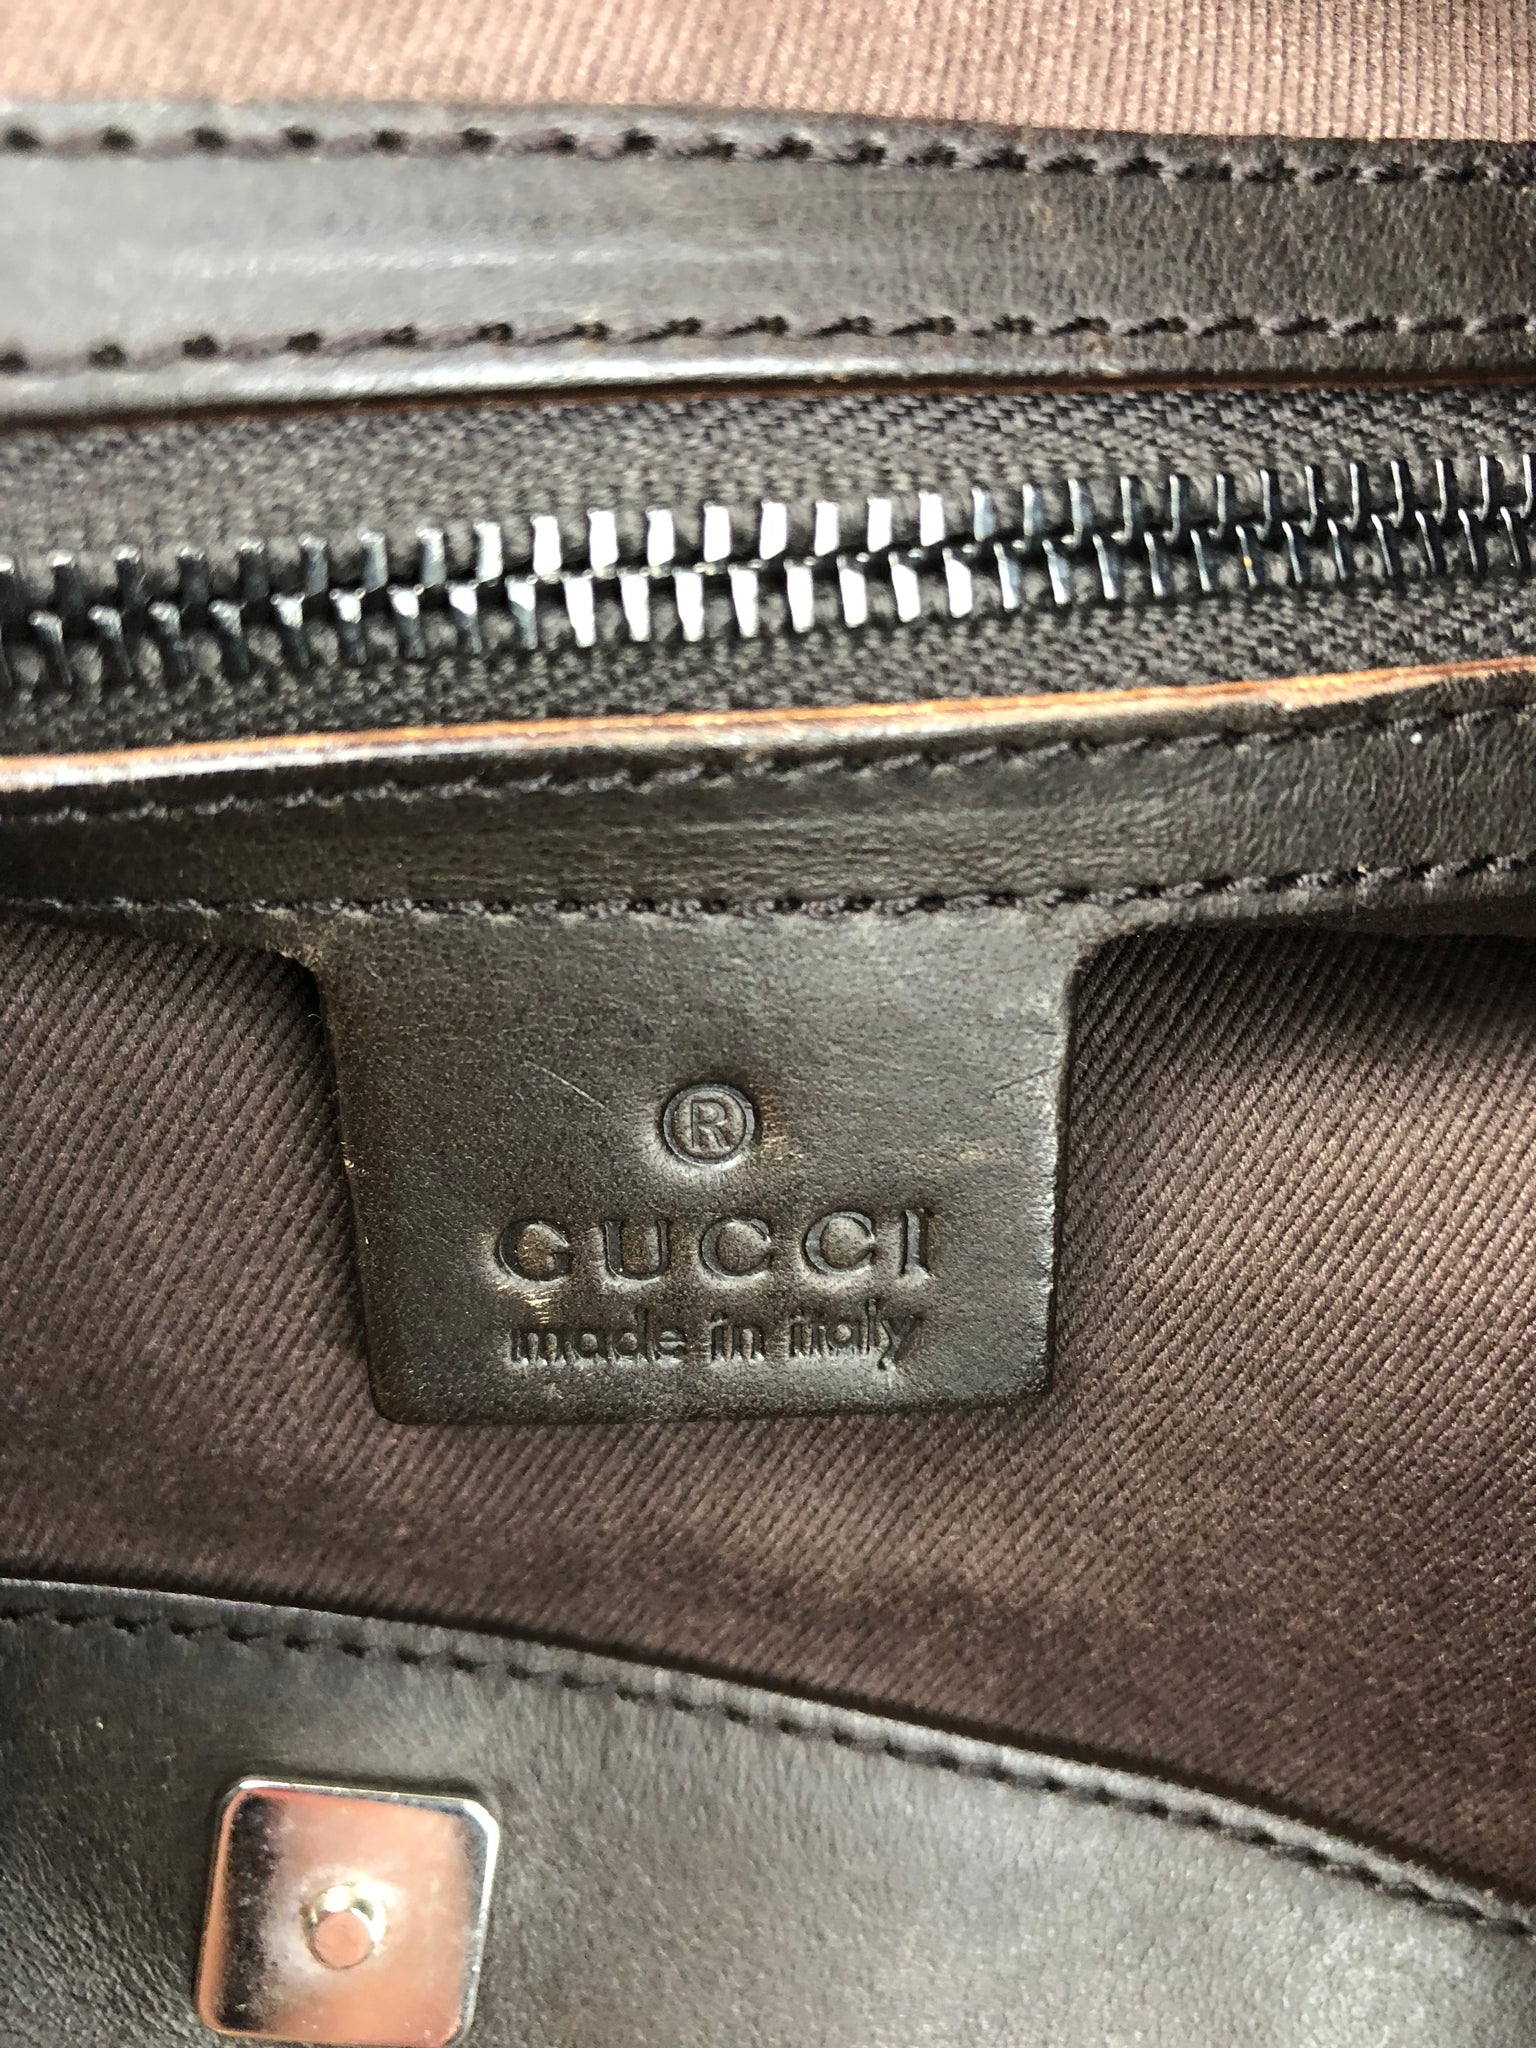 GUCCI Supreme Hobo Bag